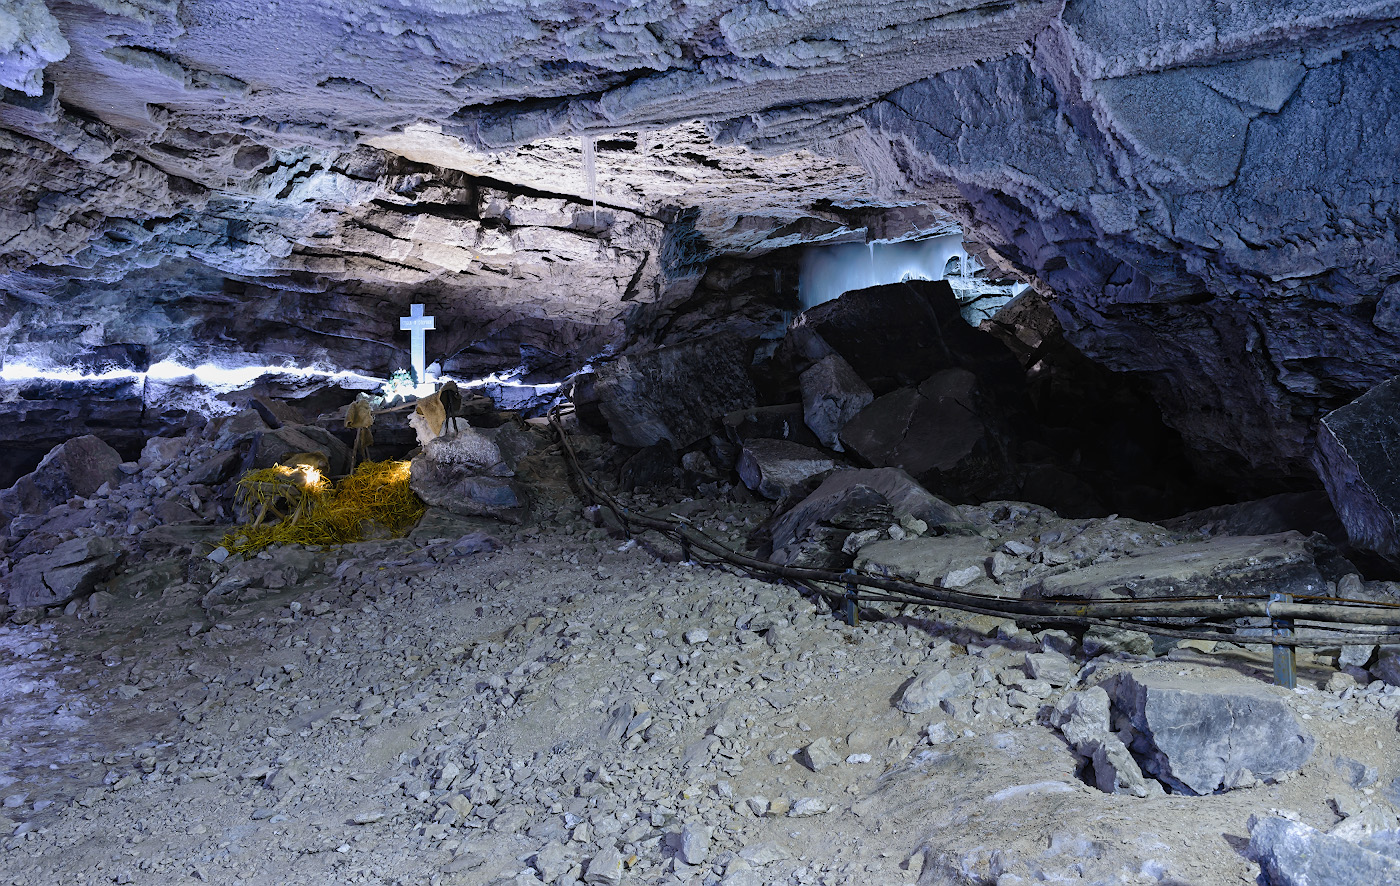 Фото 19. Пример съемки Крестового грота Кунгурской пещеры на широкоугольный объектив. 2.0, -0.33, 8.0, 400, 29.